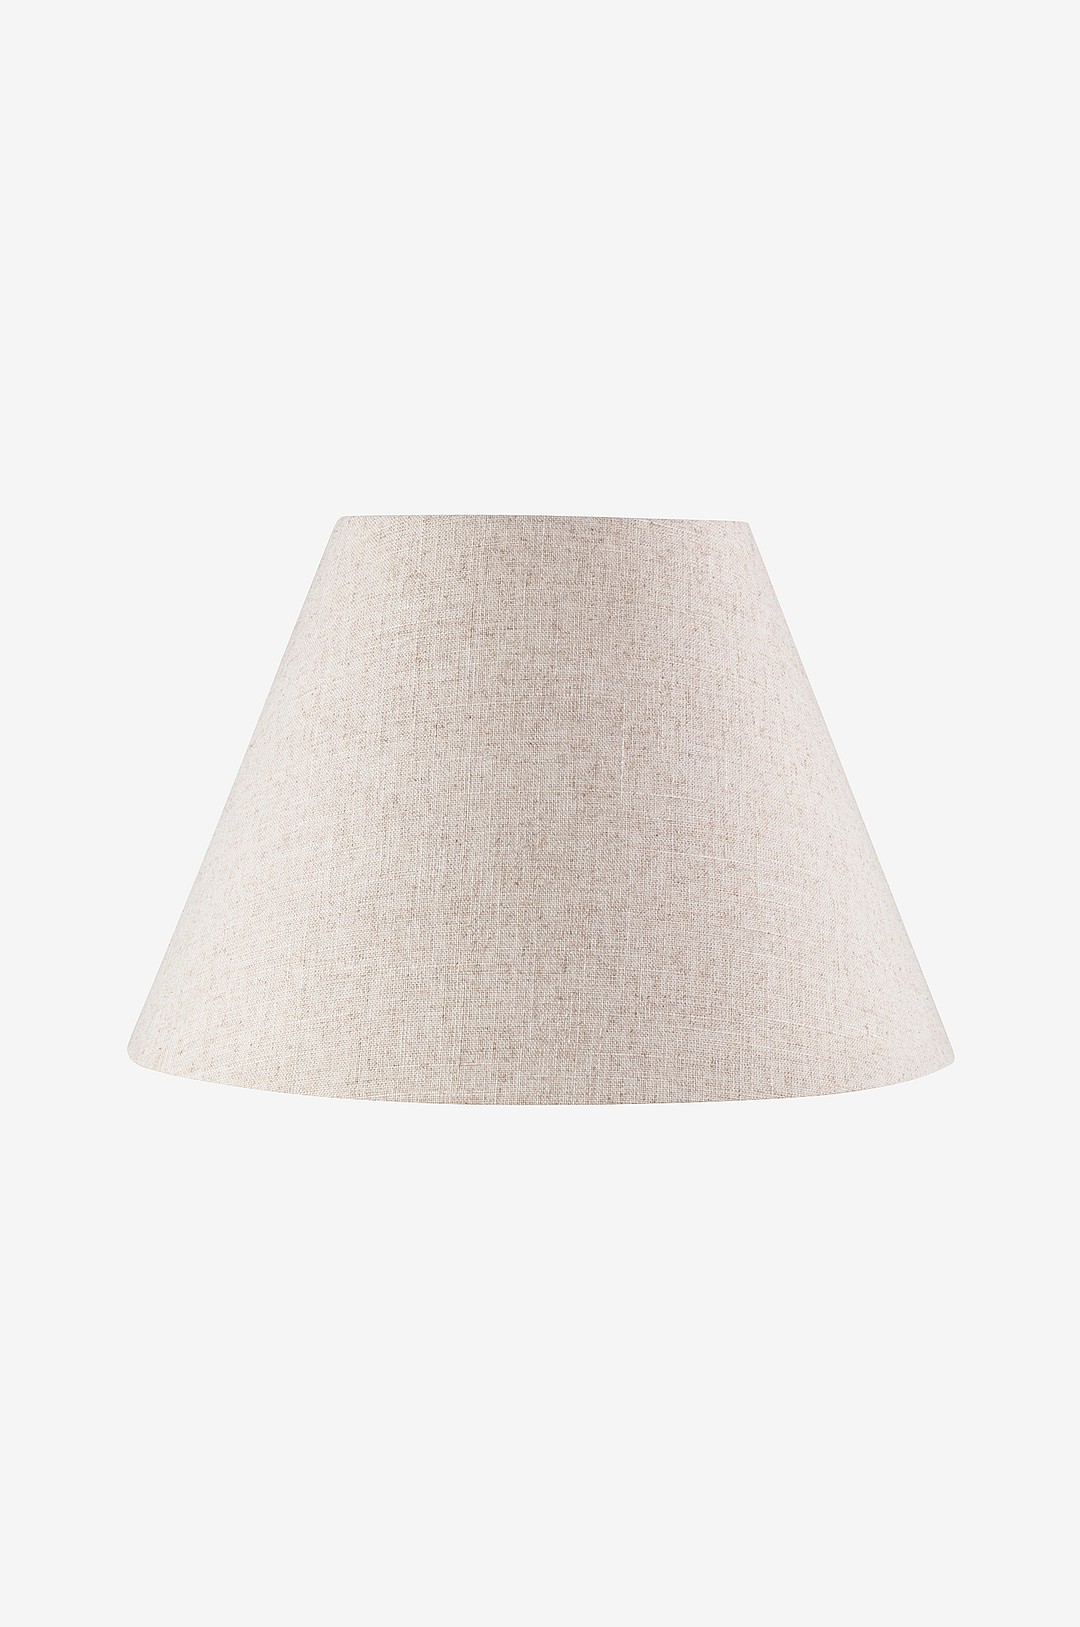 Globen Lighting - Lampskärm Sigrid ⌀ 40 cm - Beige